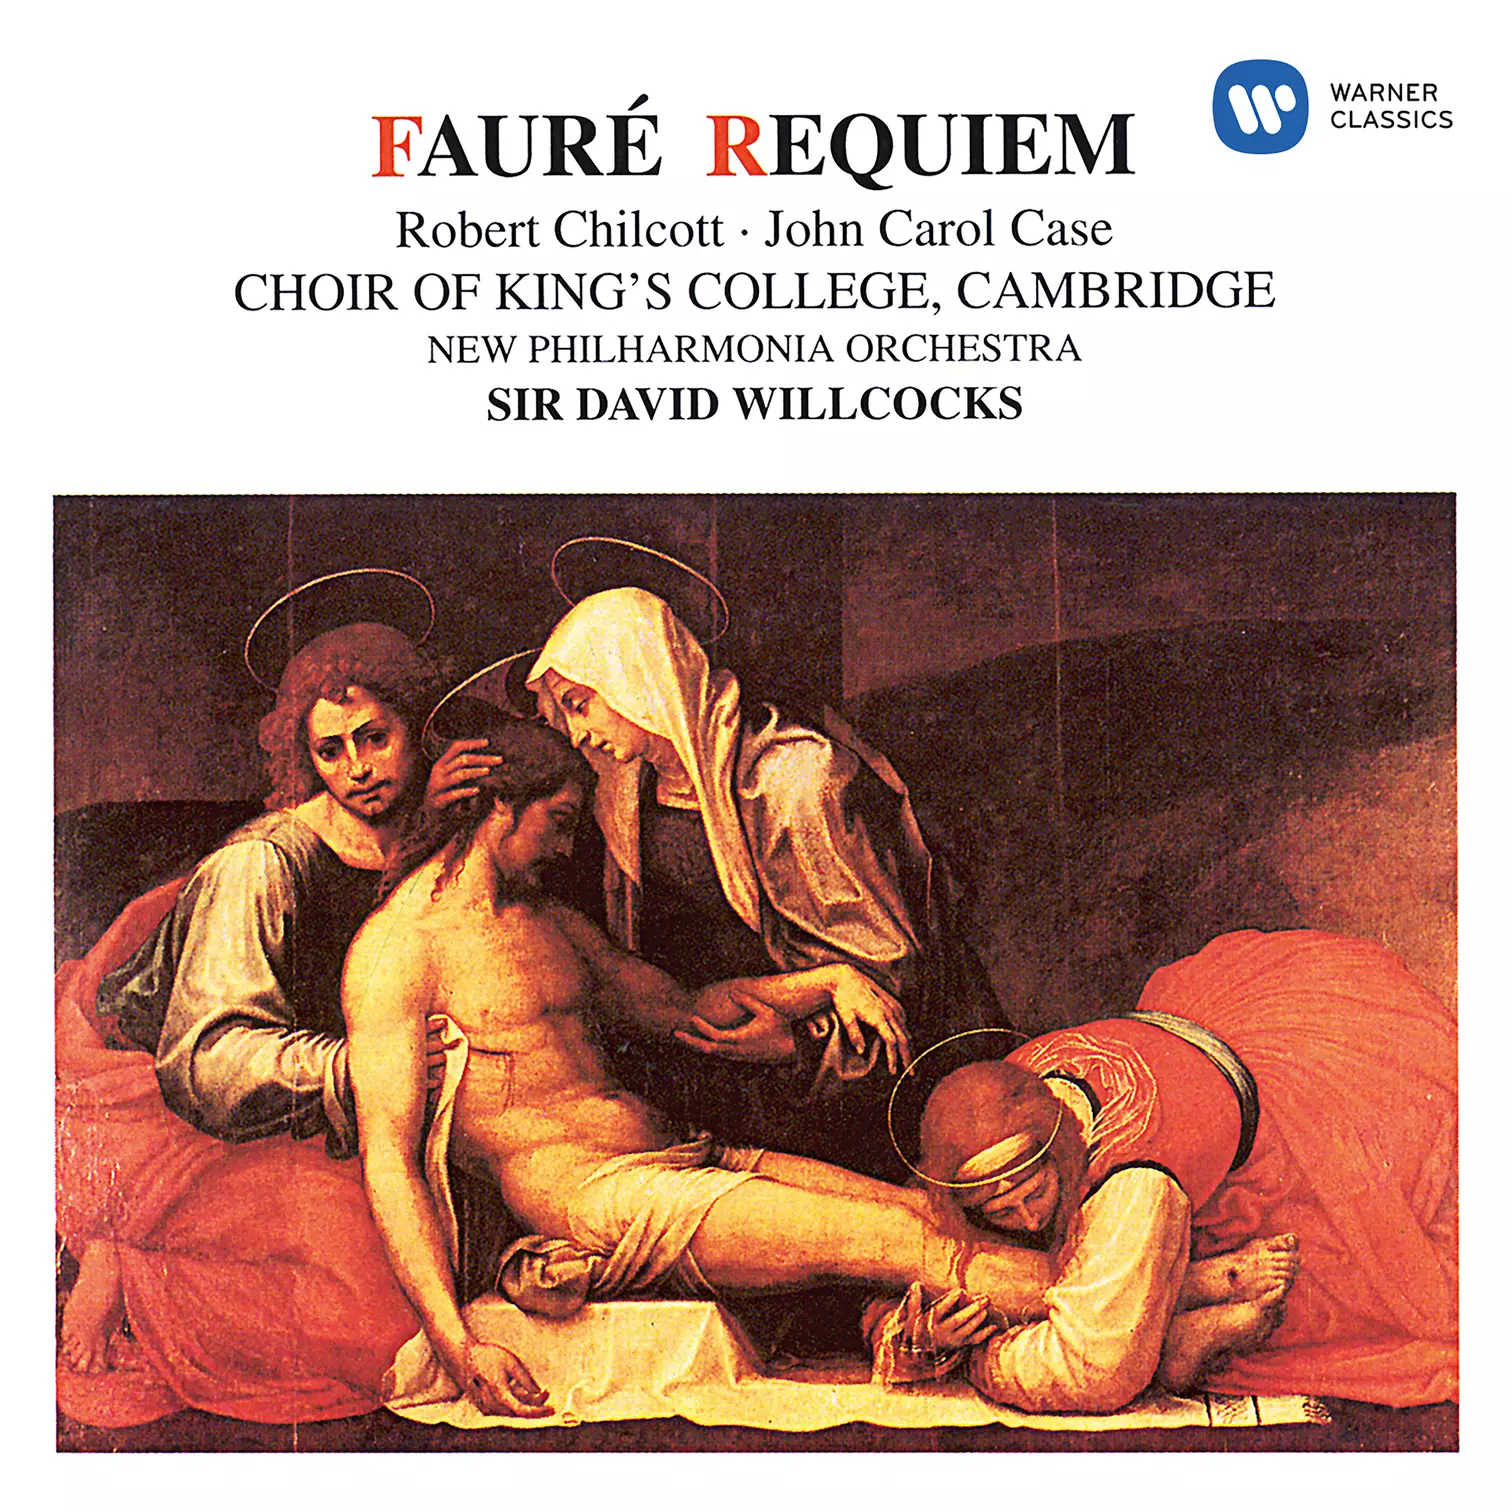 Fauré: Requiem, Op. 48 & Pavane, Op. 50